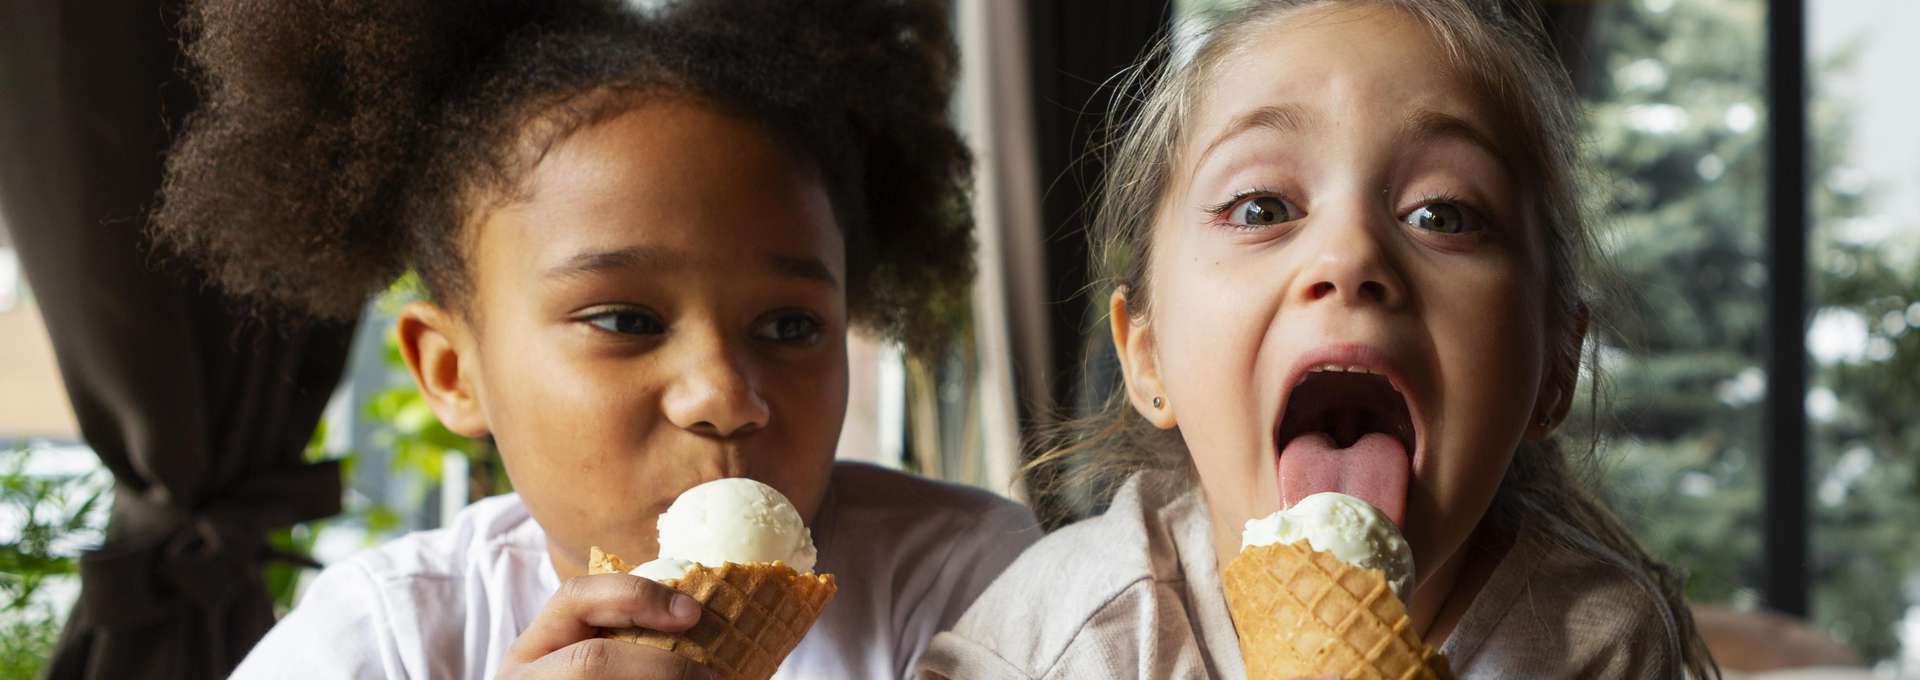 Två barn som äter glass